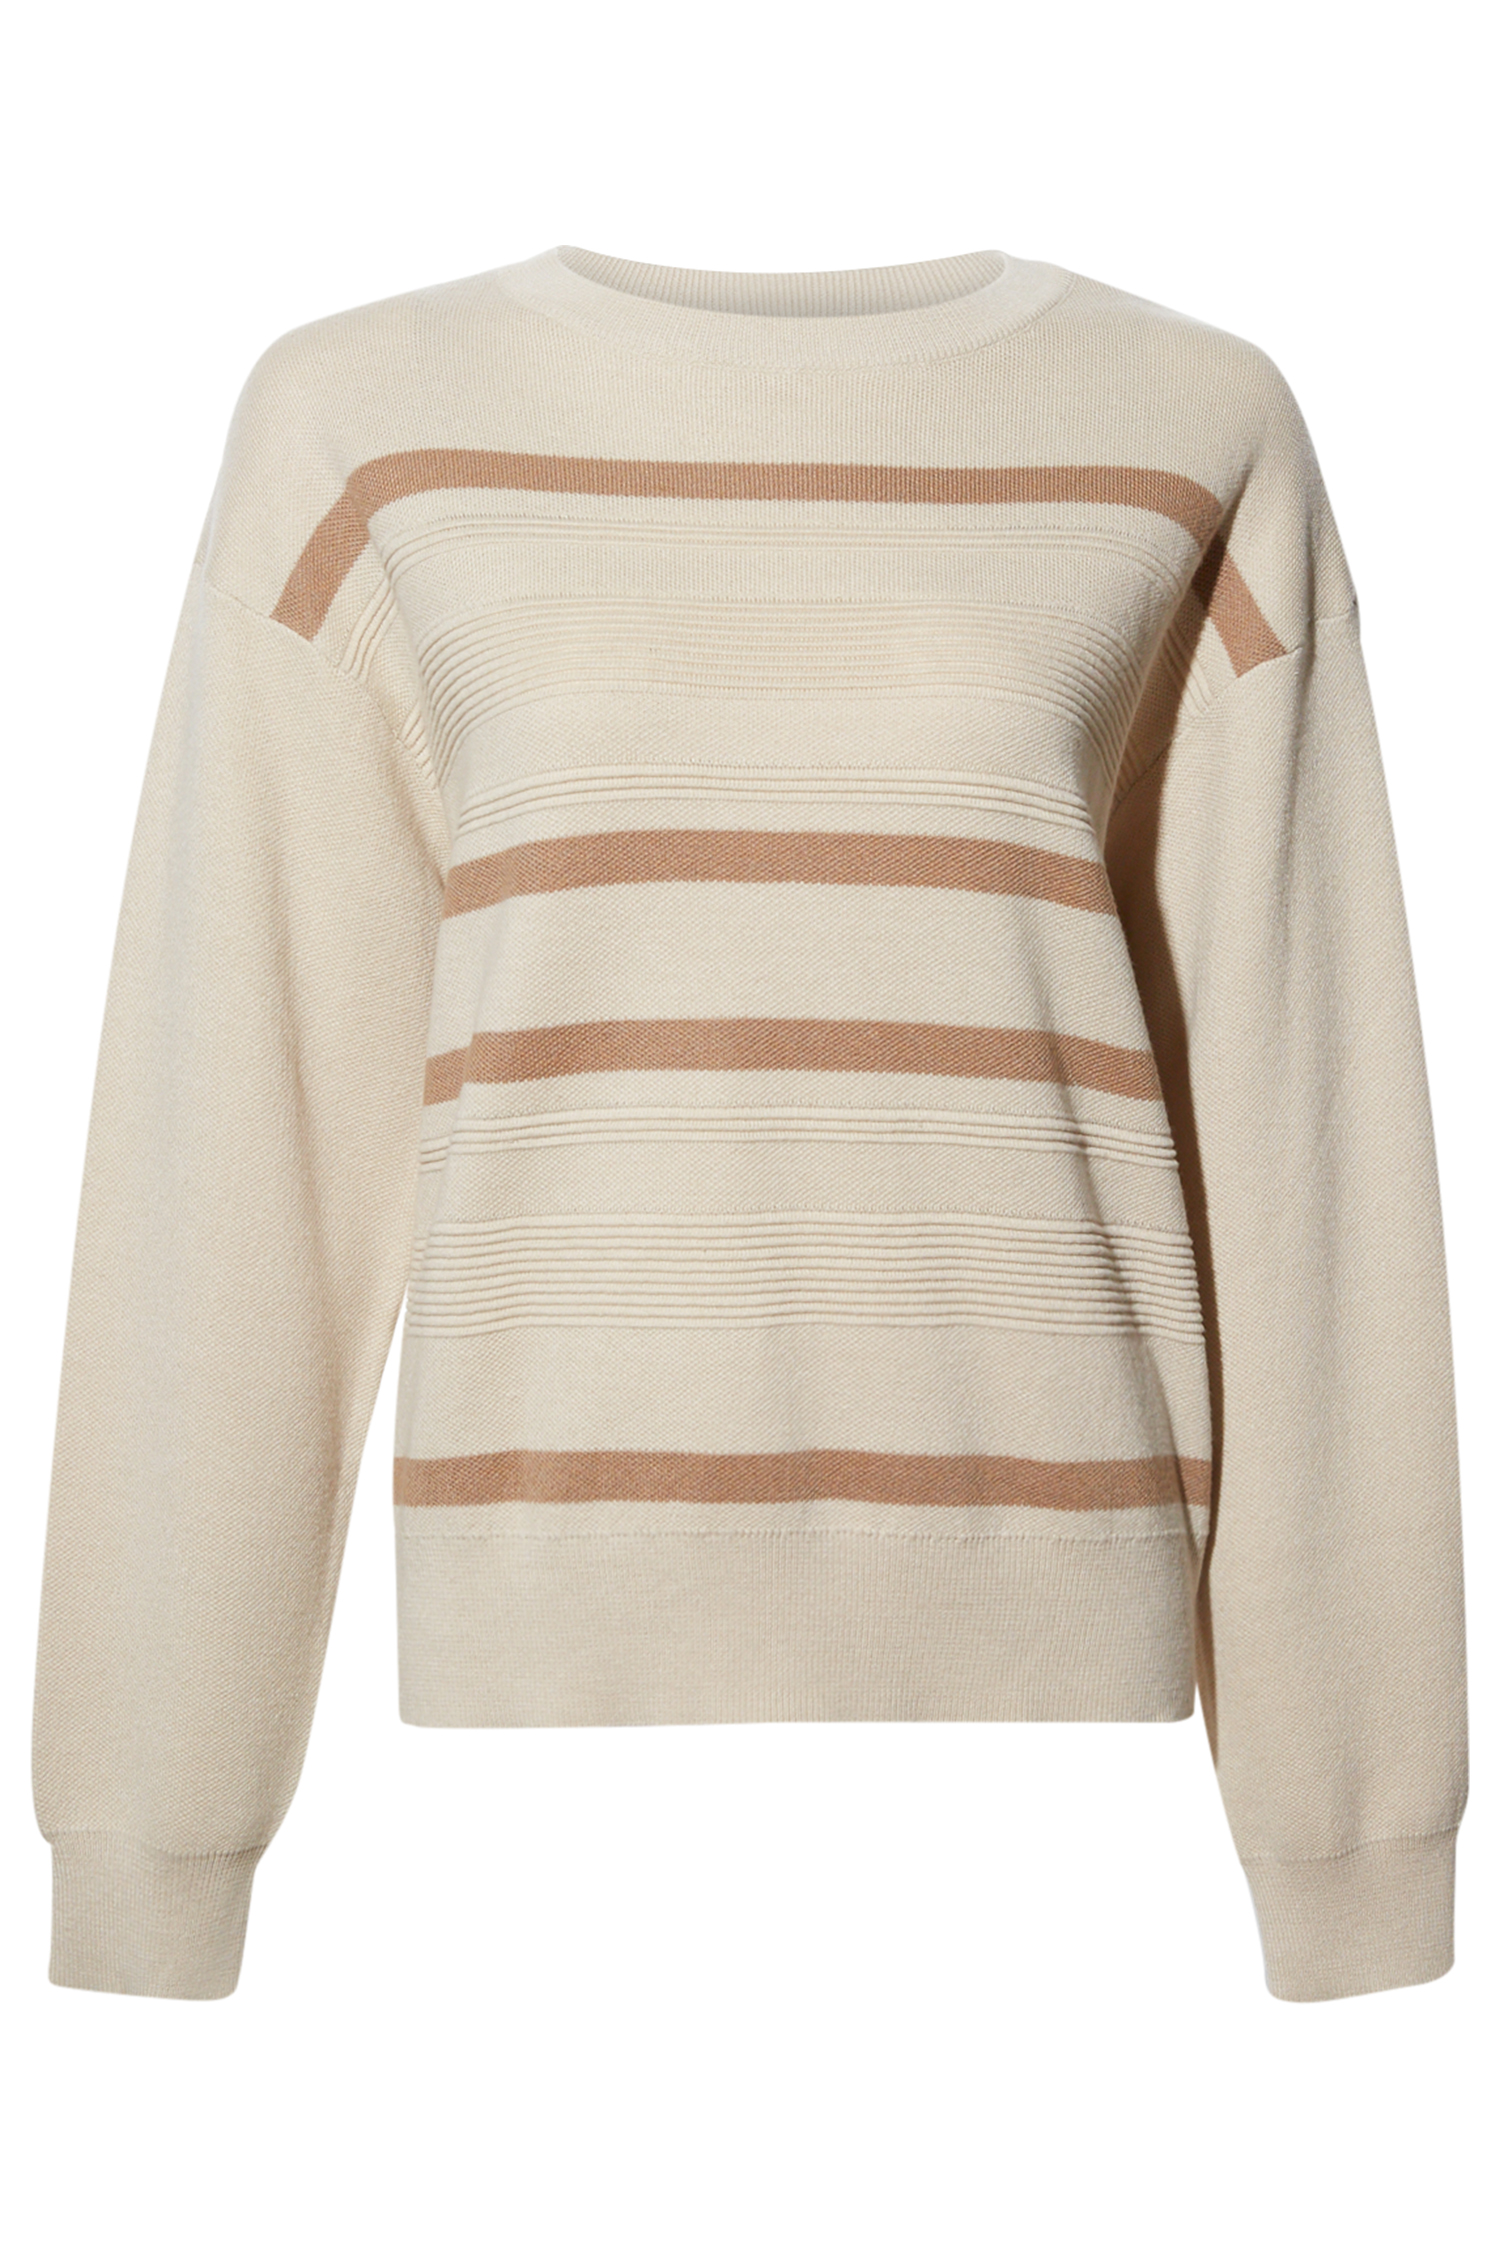 Thread & Supply Multi Colored Stripe Sweater